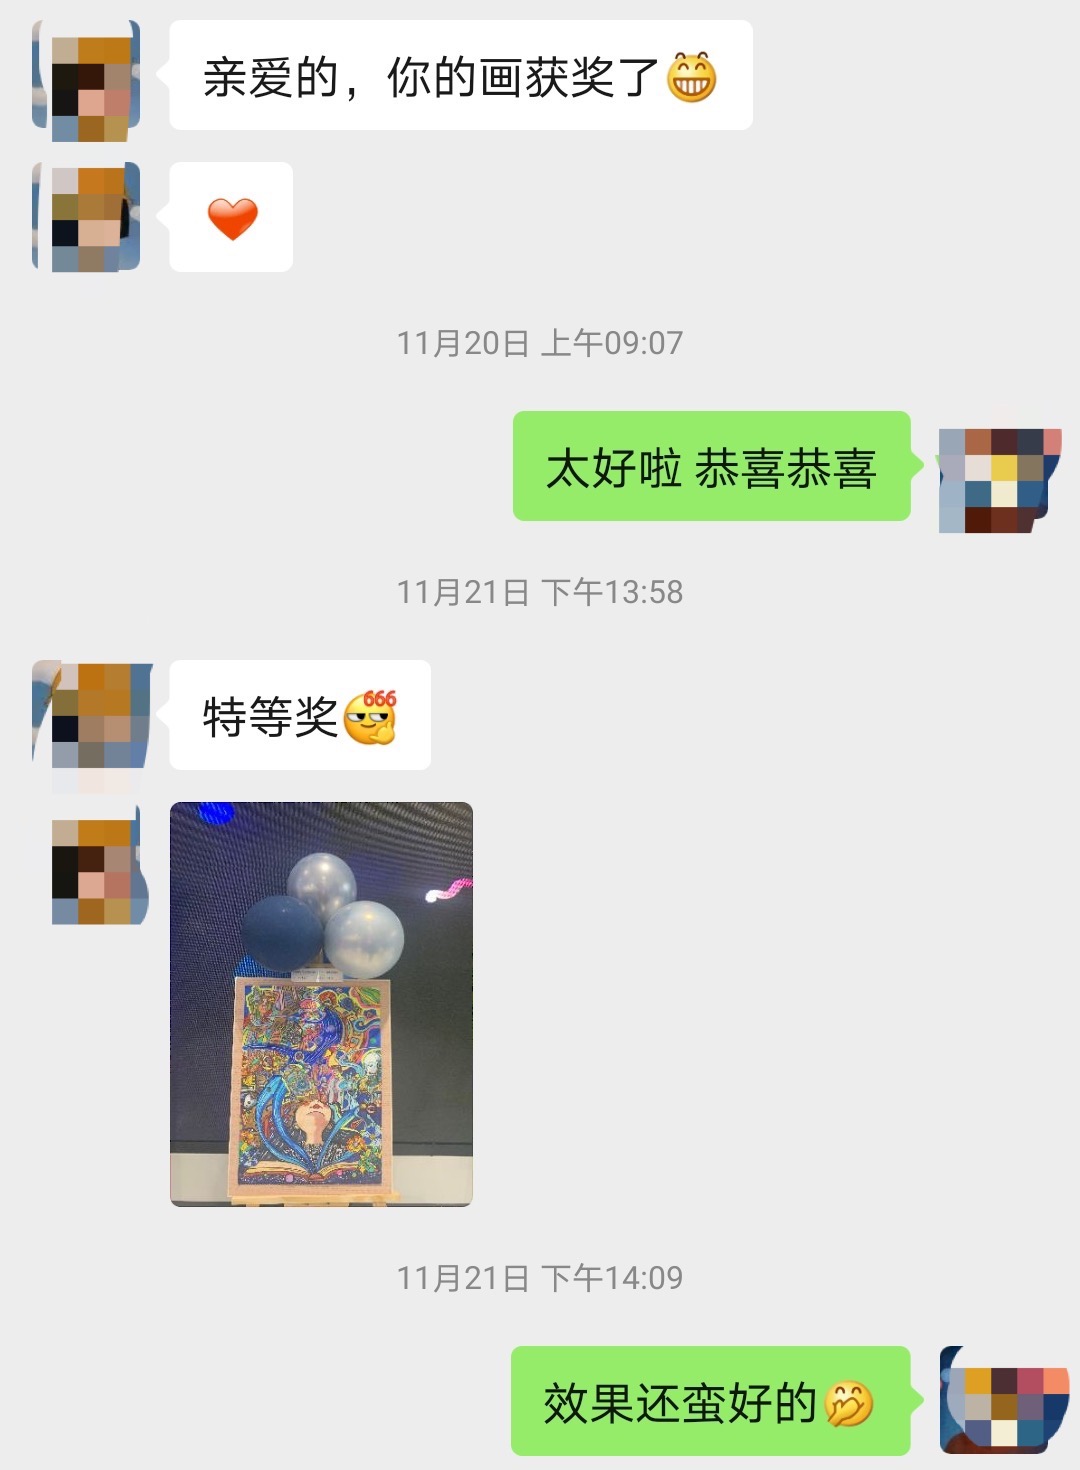 肖宝向记者展示的一张微信截图中，一位客户报喜，称代画的一幅科幻画获得了南京市的“特等奖”。